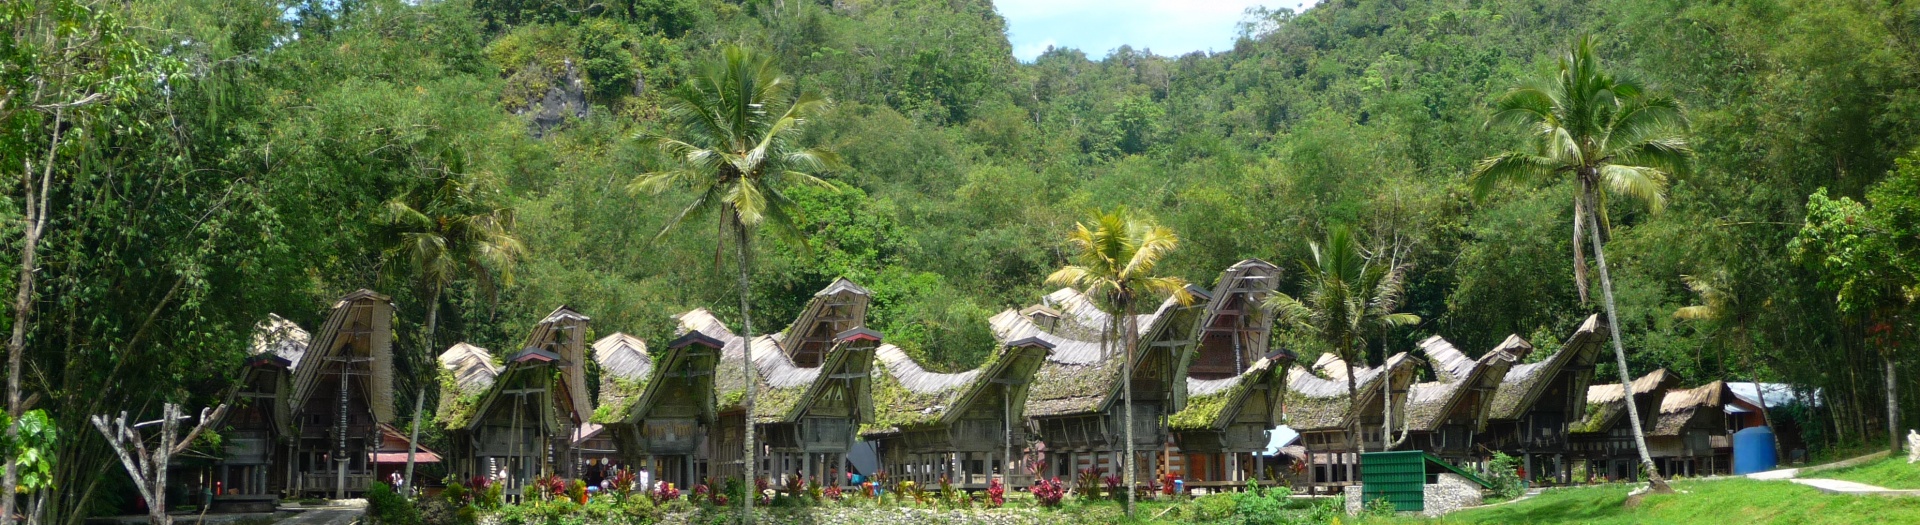 Voyages sur l'île de Sulawesi: plongée, randonnées et treks